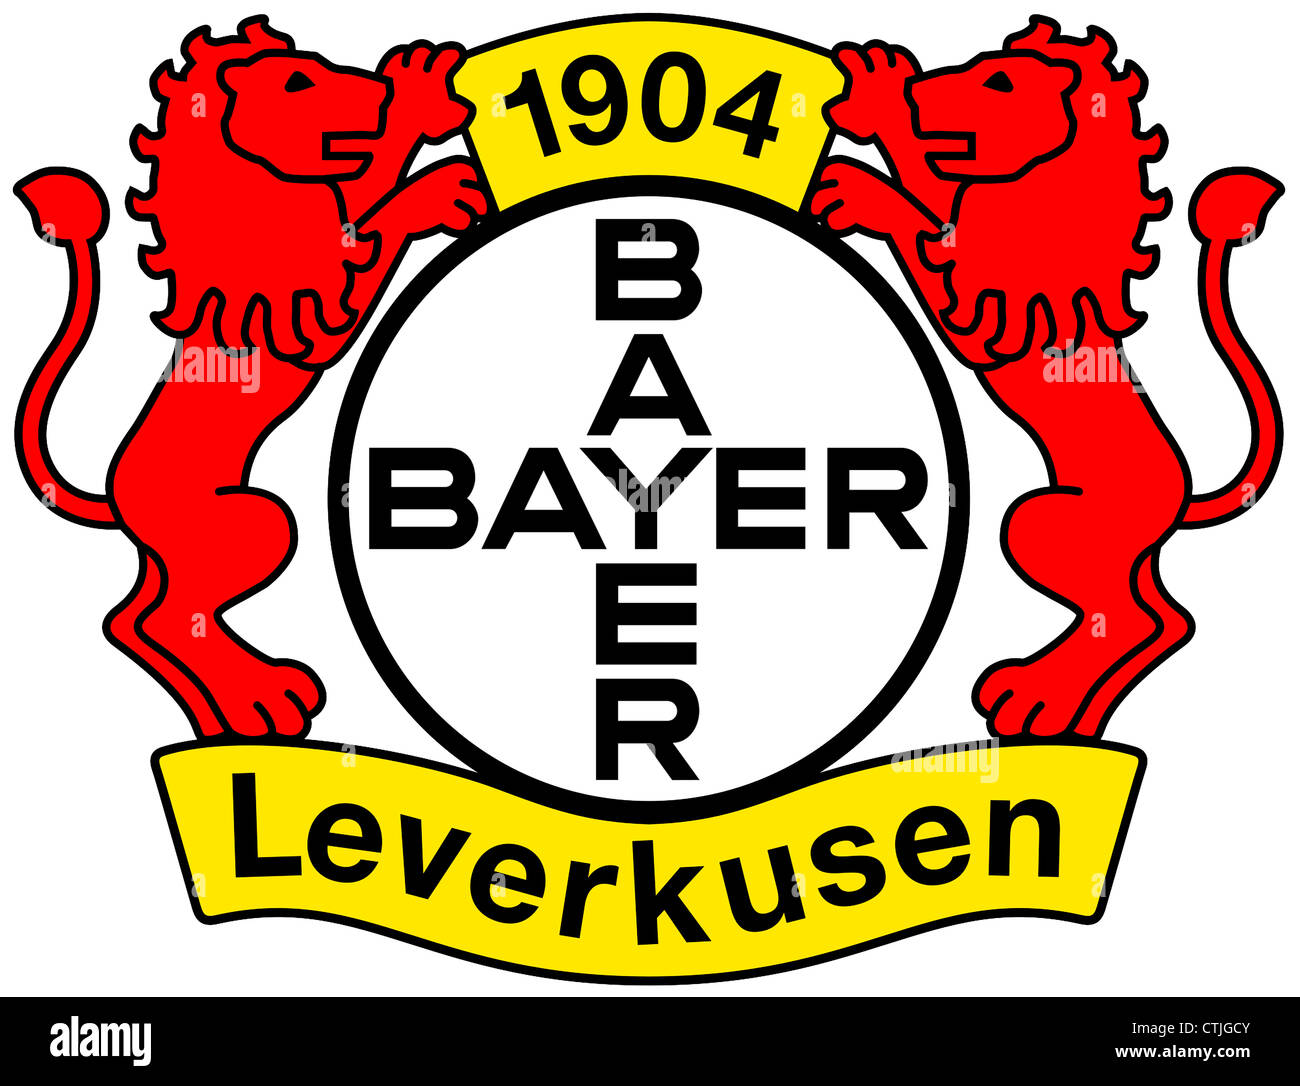 Logo des deutschen Fußball-Nationalmannschaft Bayer 04 Leverkusen  Stockfotografie - Alamy